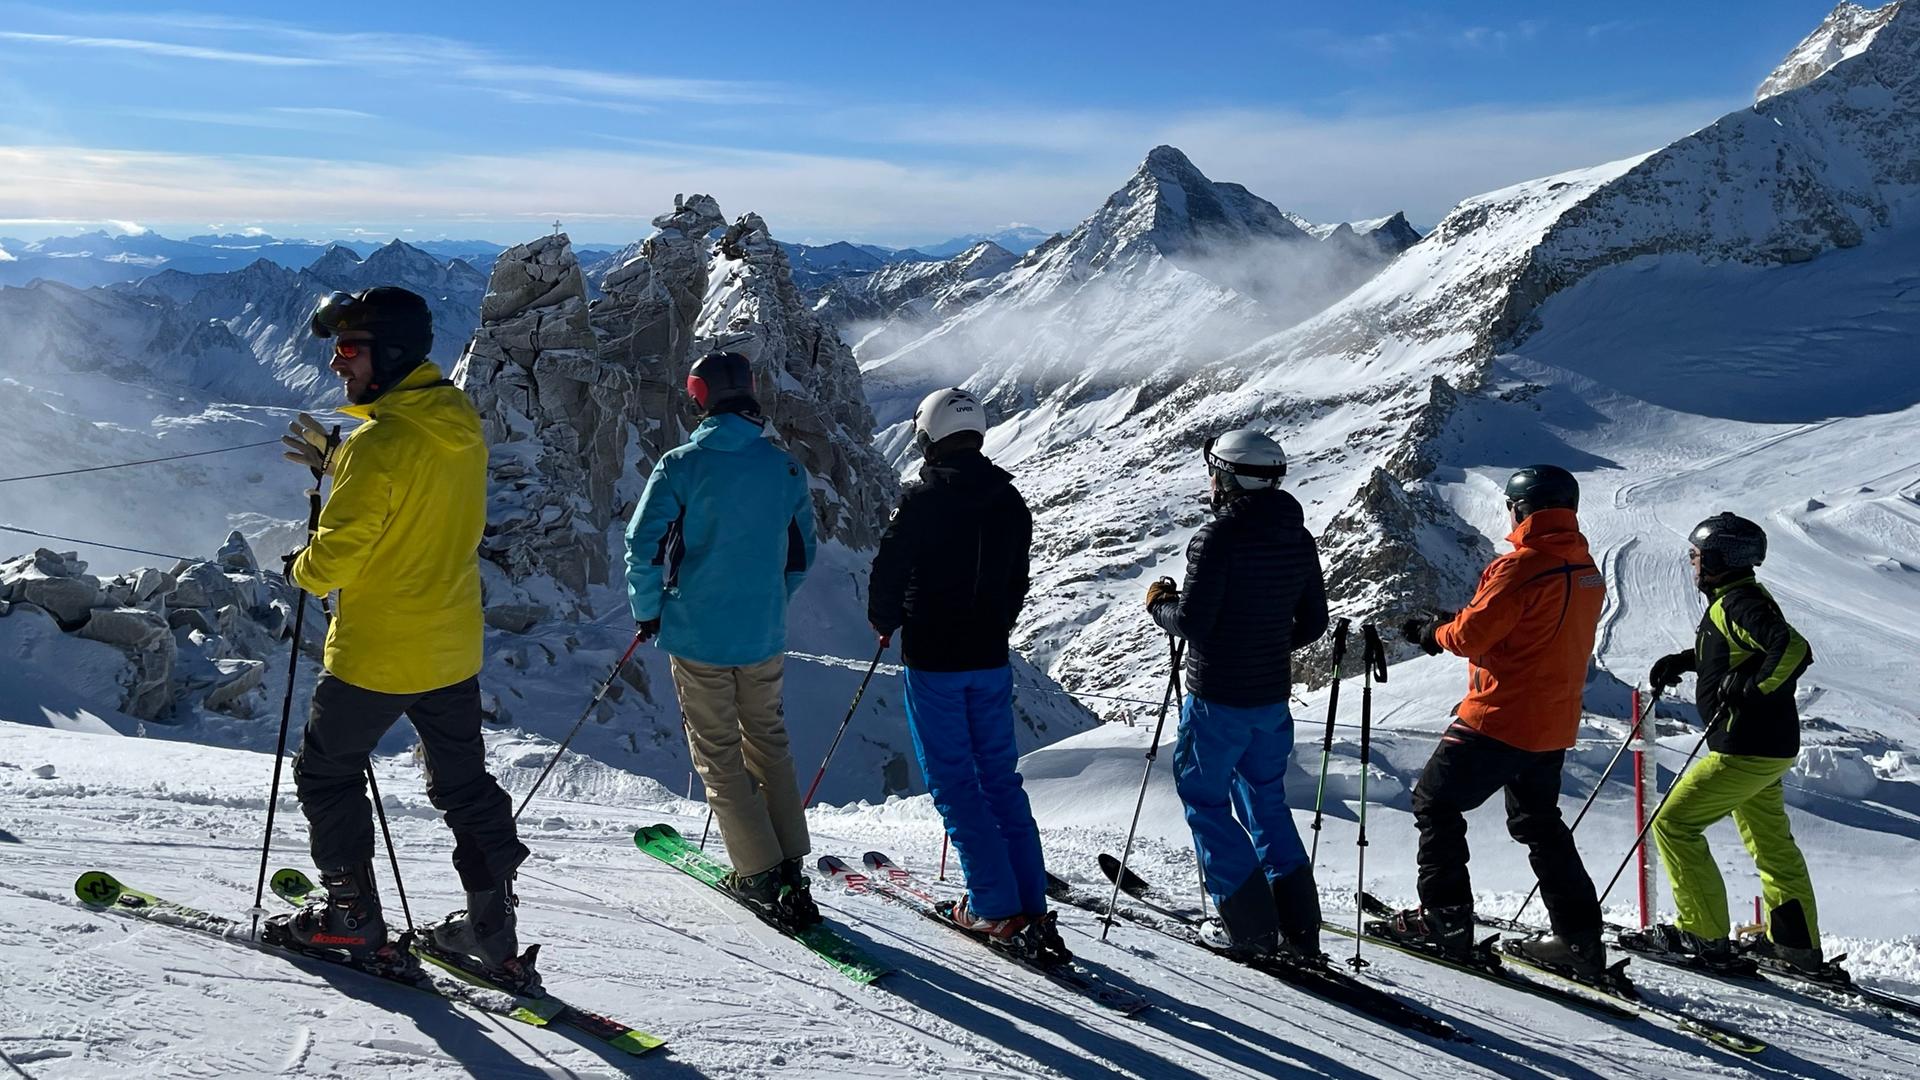 Wintersportler stehen auf dem Hintertuxer Gletscher und schauen Richtung Schlegeisspeicher